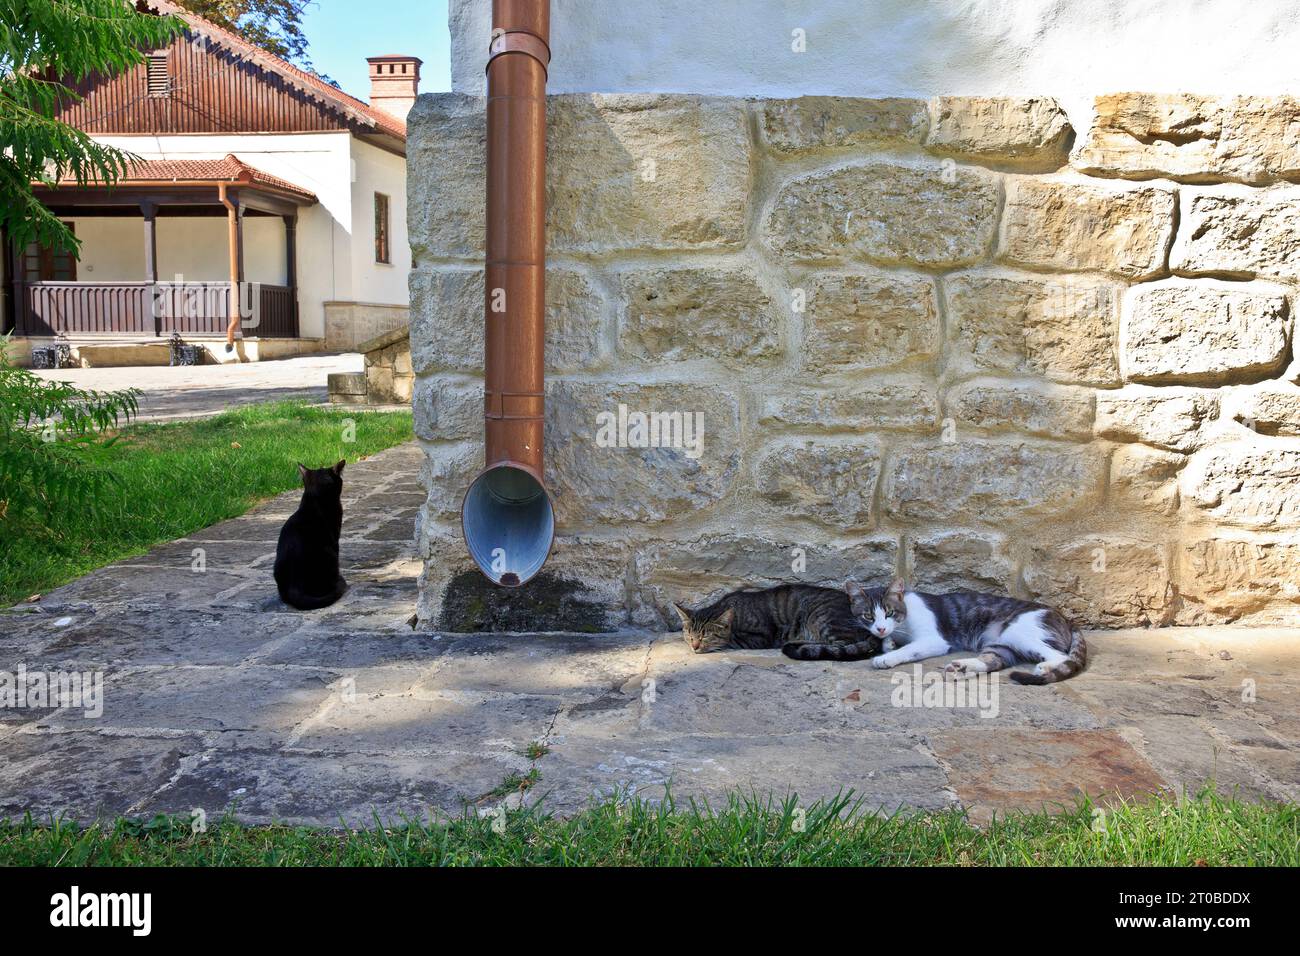 Alcuni gatti fanno un pisolino in un caldo pomeriggio estivo al monastero ortodosso della Capriana a Capriana, Moldavia Foto Stock